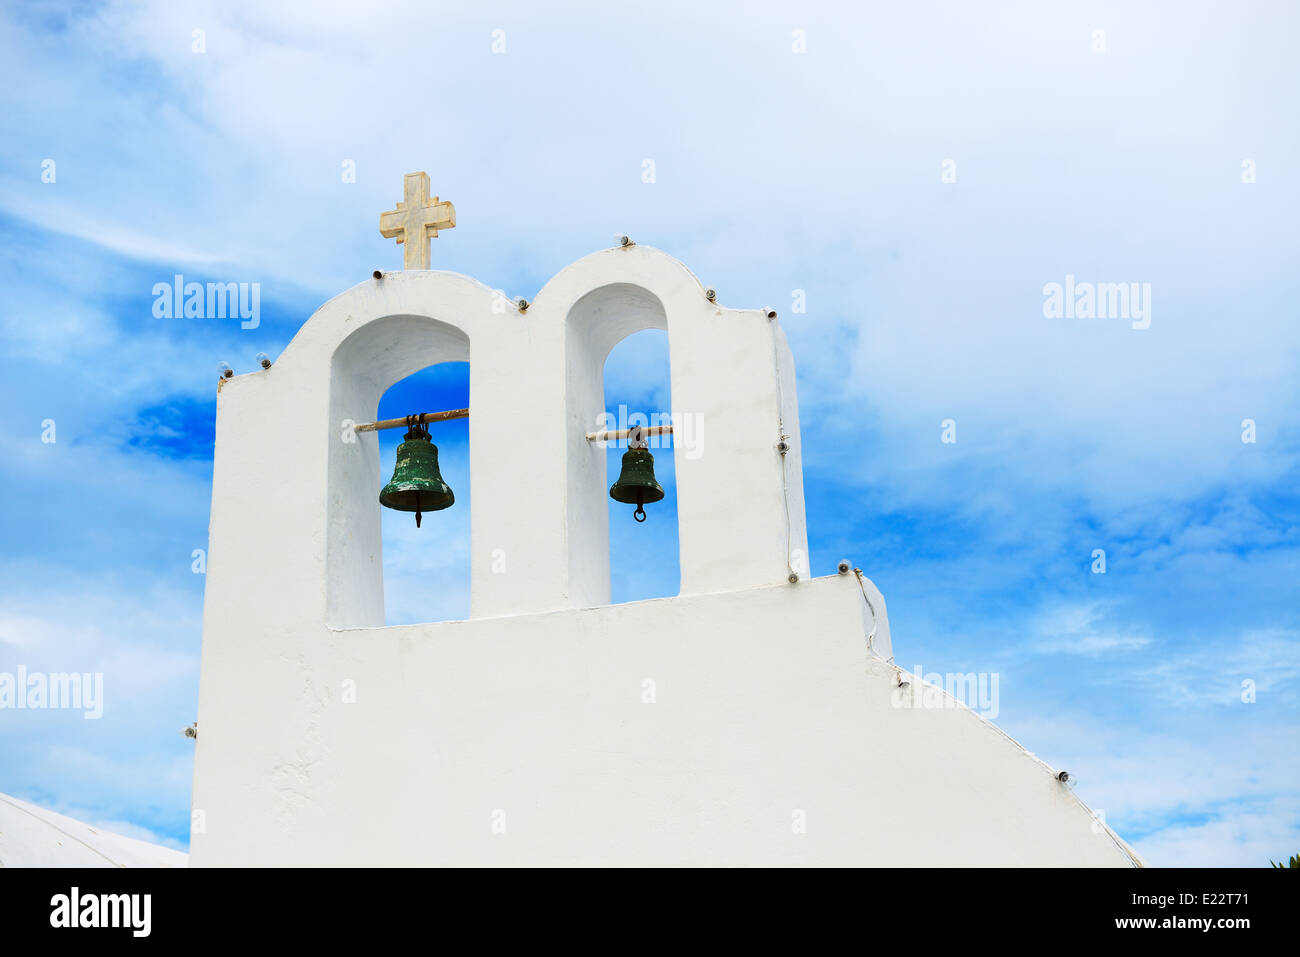 Chiesa ortodossa sull isola di Santorini, Grecia Foto Stock